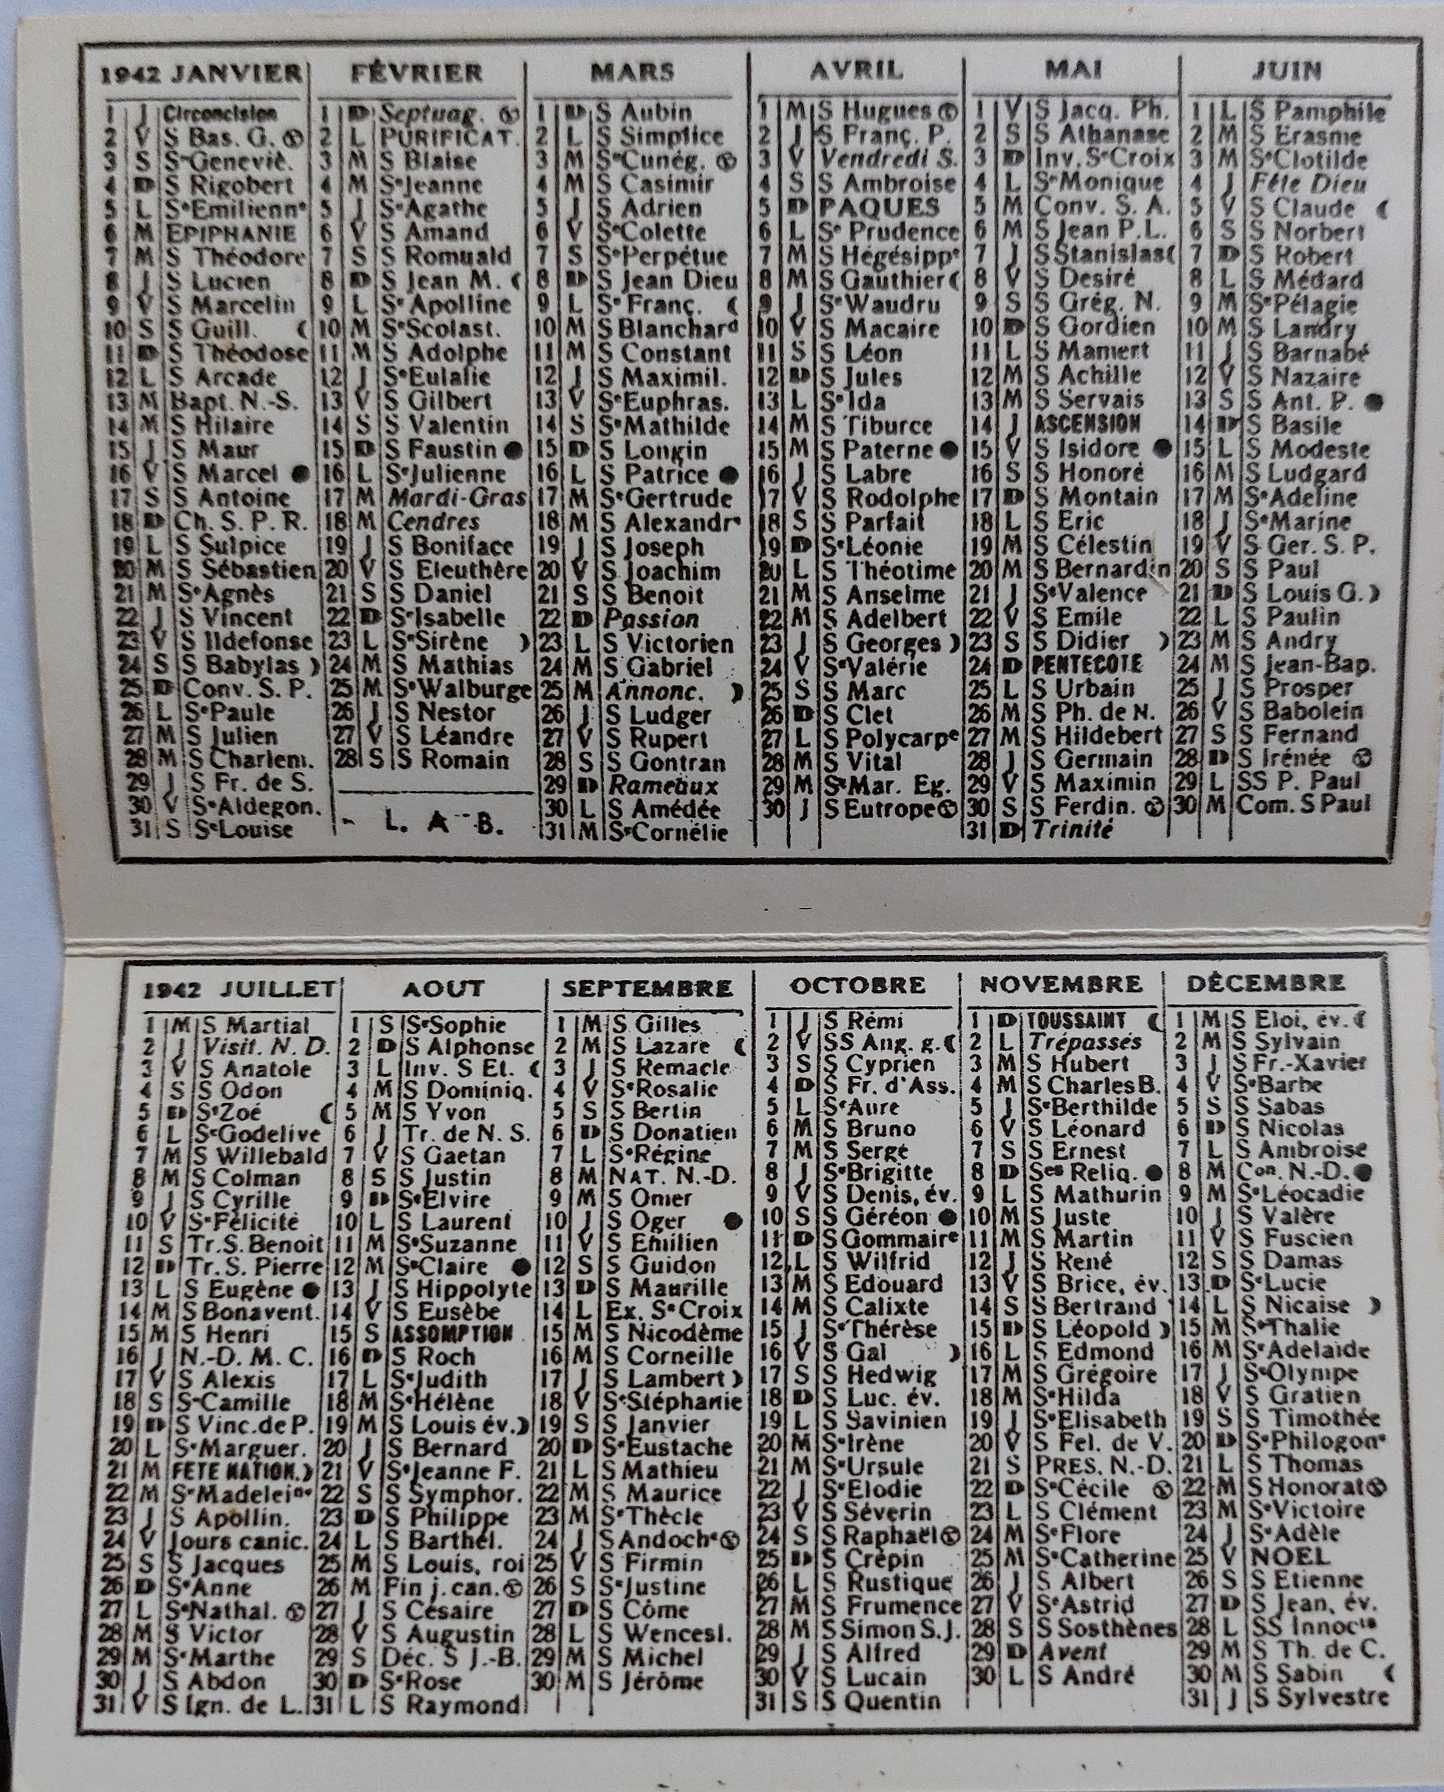 zabytkowy, oryginalny kalendarzyk z 1942 r.